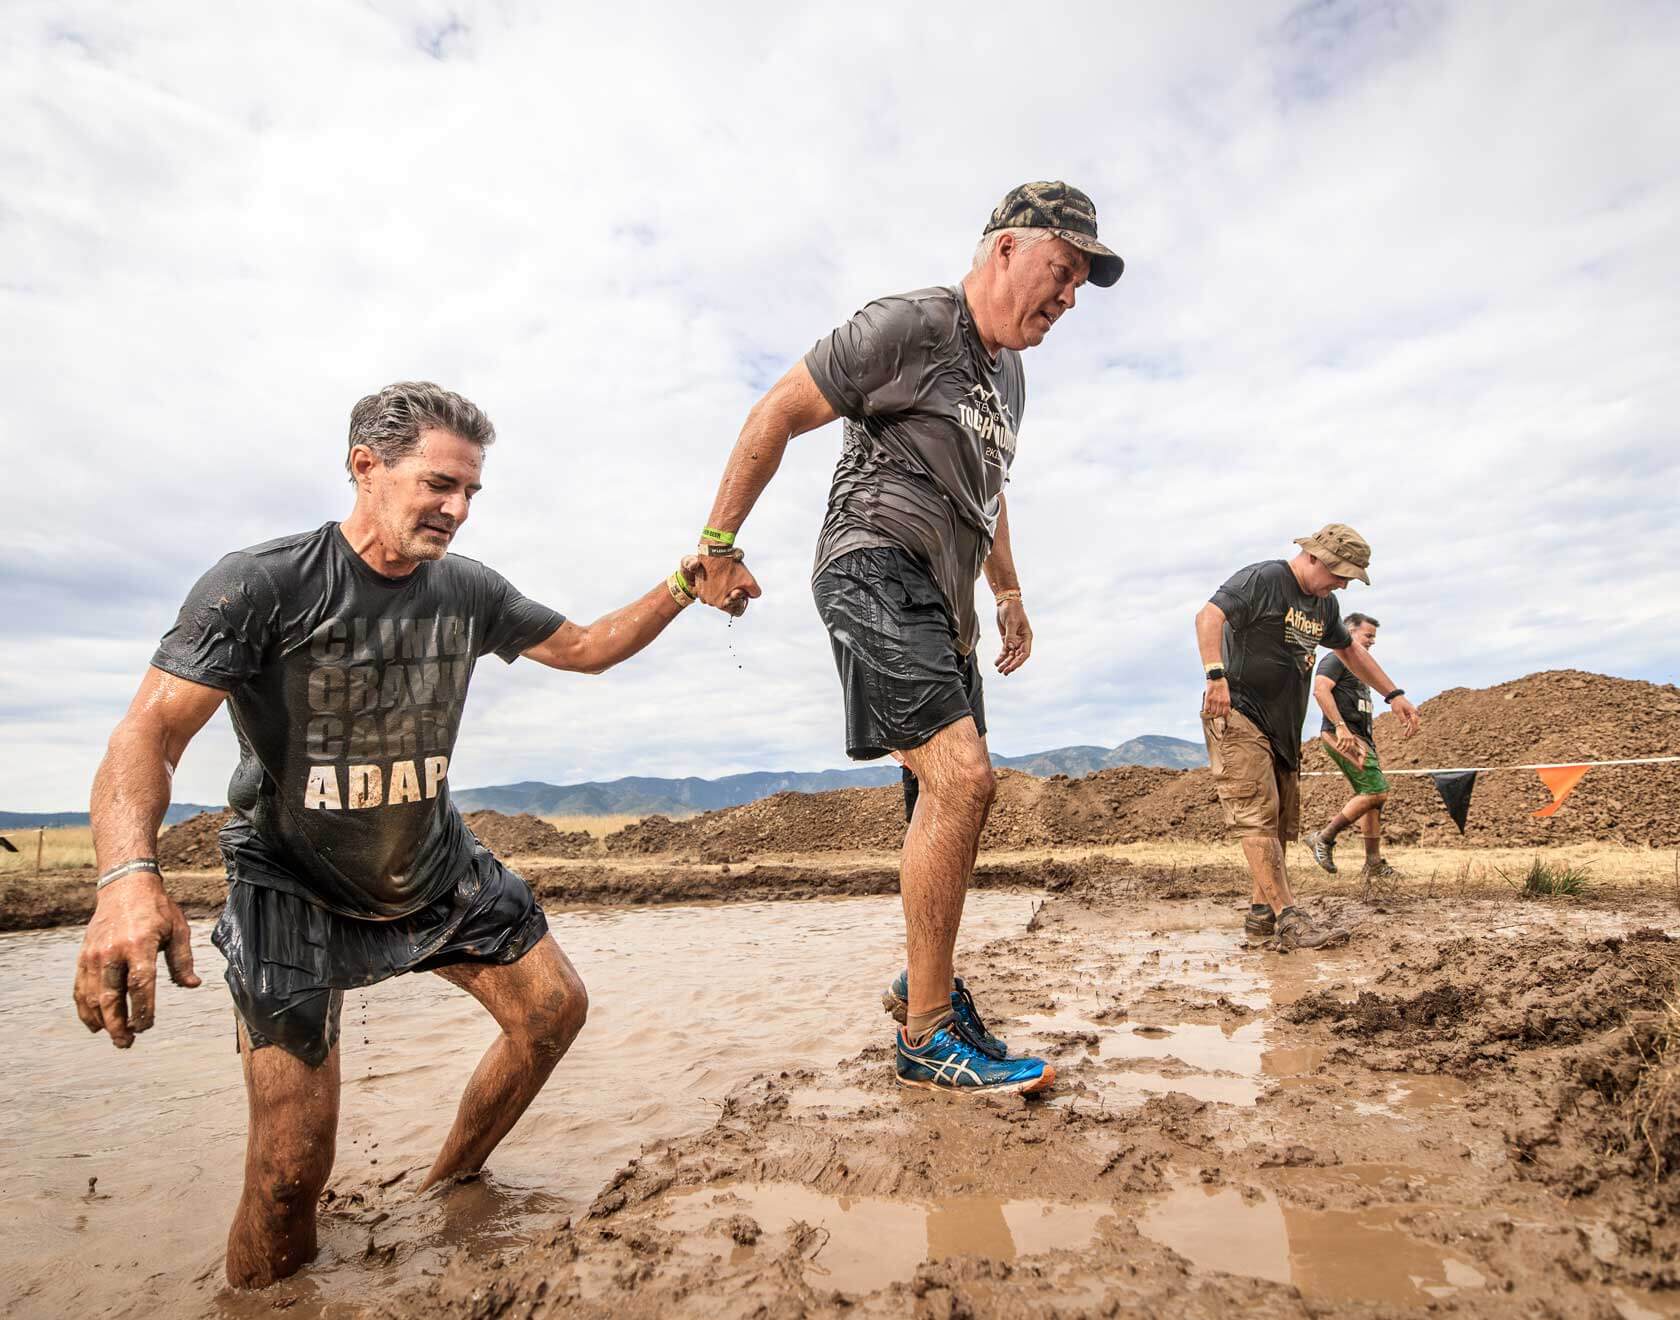 Colorado Mud Run Tough Mudder Colorado 2022 July 23 & 24, 2022